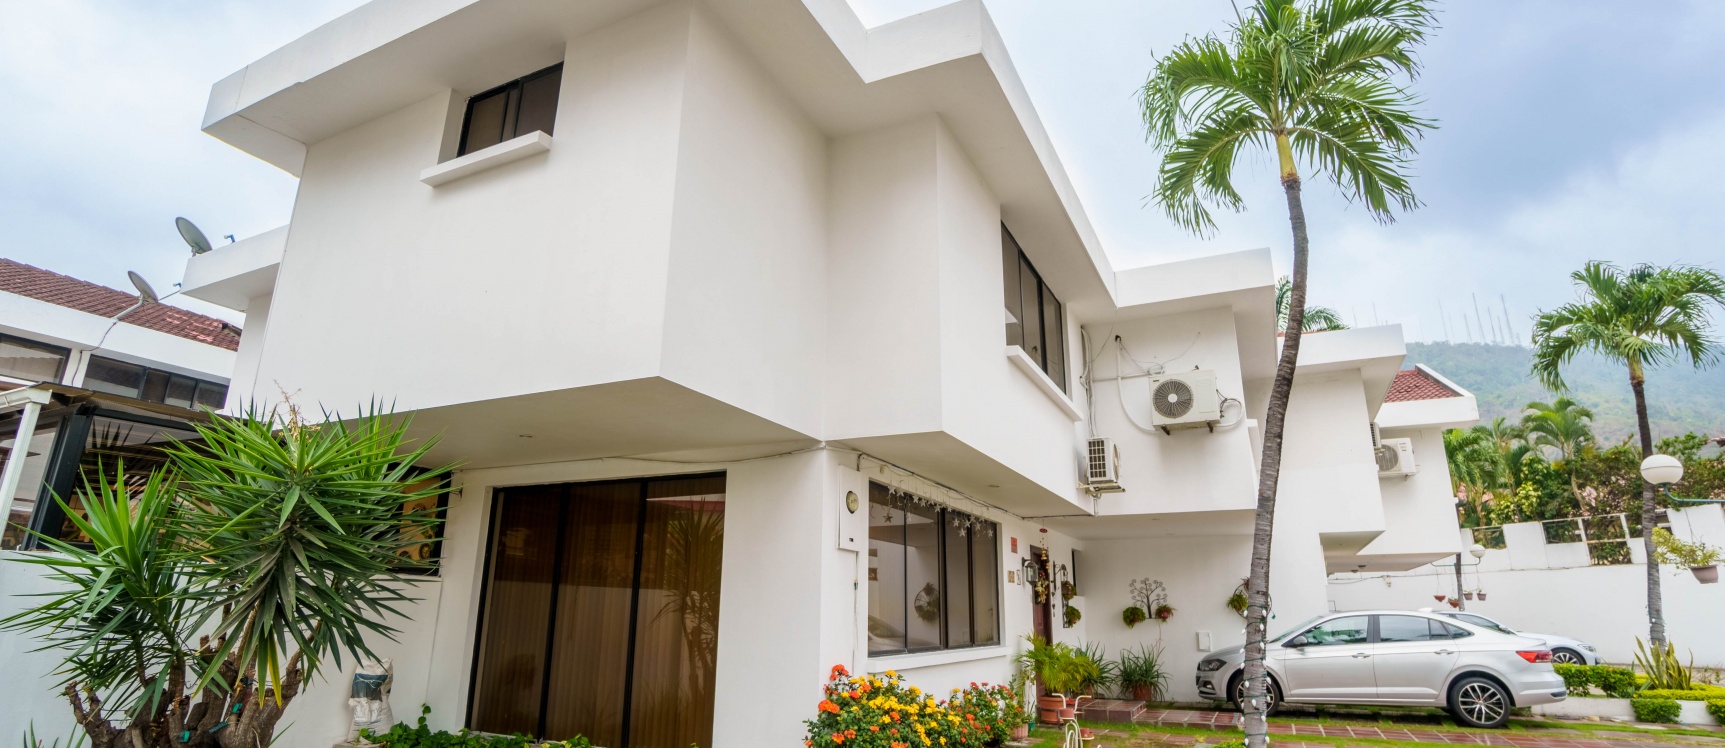 GeoBienes - Casa en venta ubicada en la Urbanización El Manantial, Ceibos - Plusvalia Guayaquil Casas de venta y alquiler Inmobiliaria Ecuador